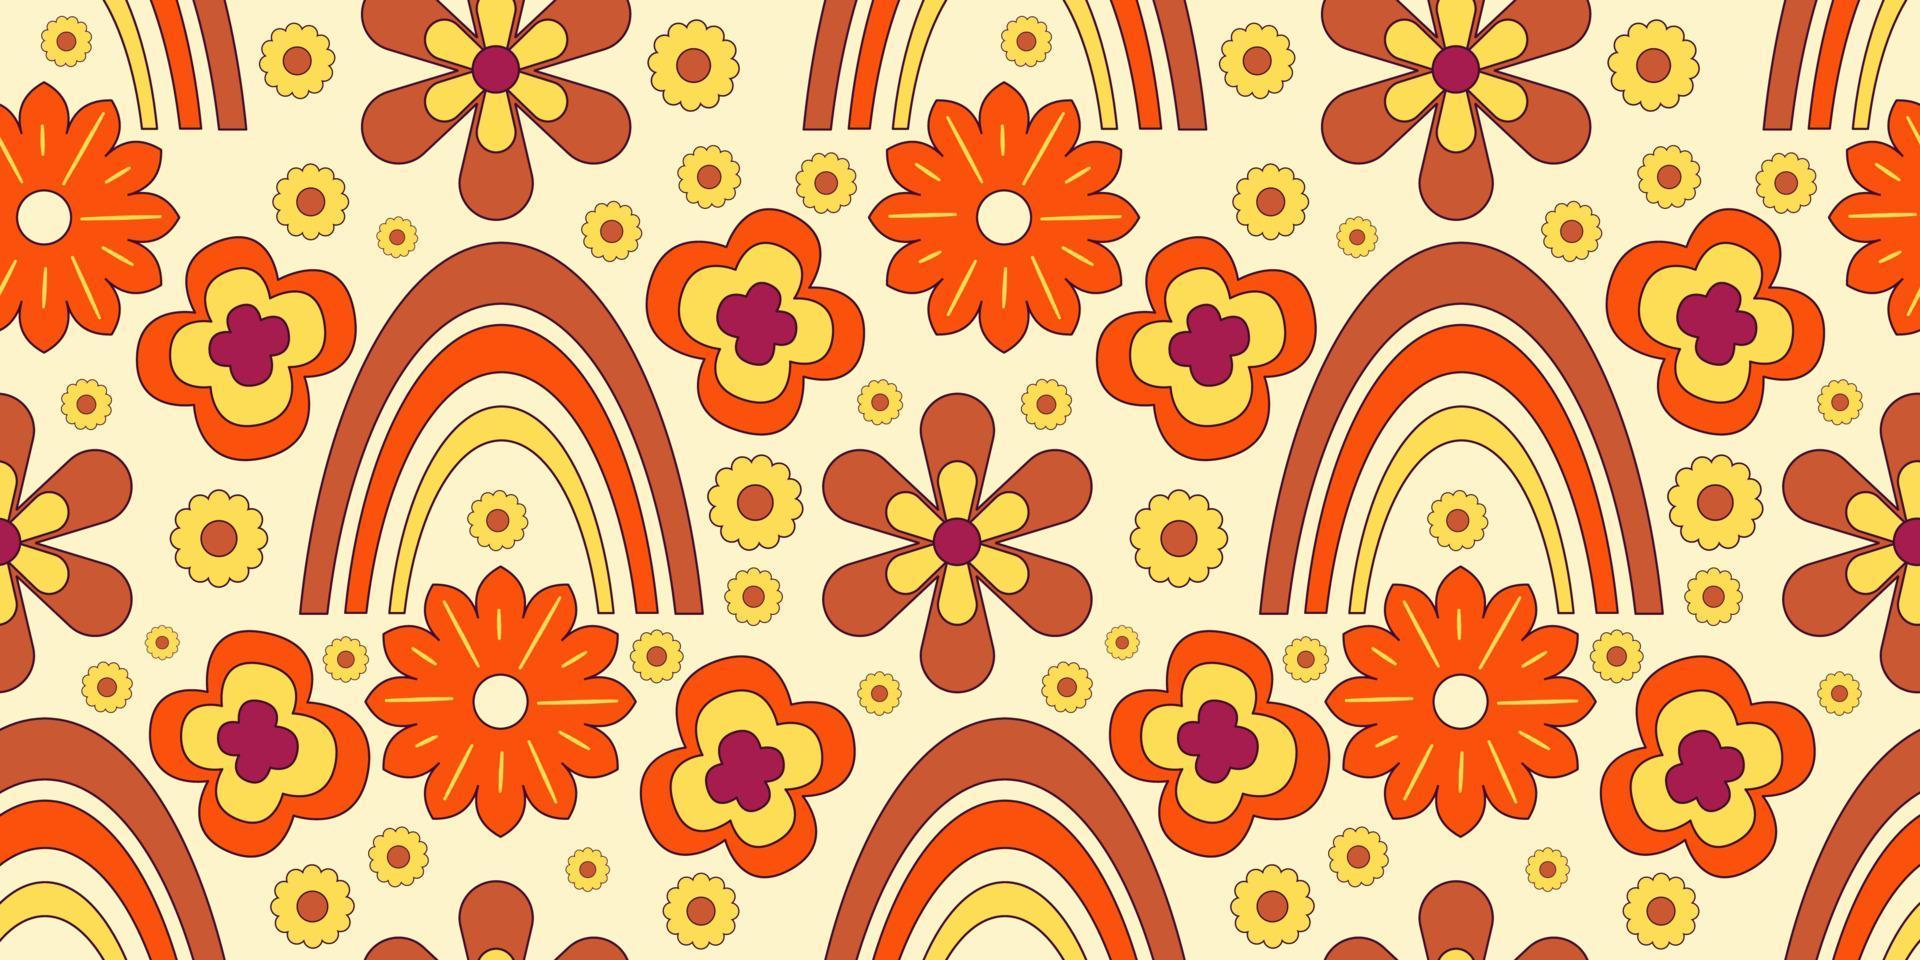 Groovy y2k retro de patrones sin fisuras con flores y arco iris. ilustración vectorial retro. fondo de flores maravillosas. Ilustración de patrones sin fisuras hippie colorido. vector